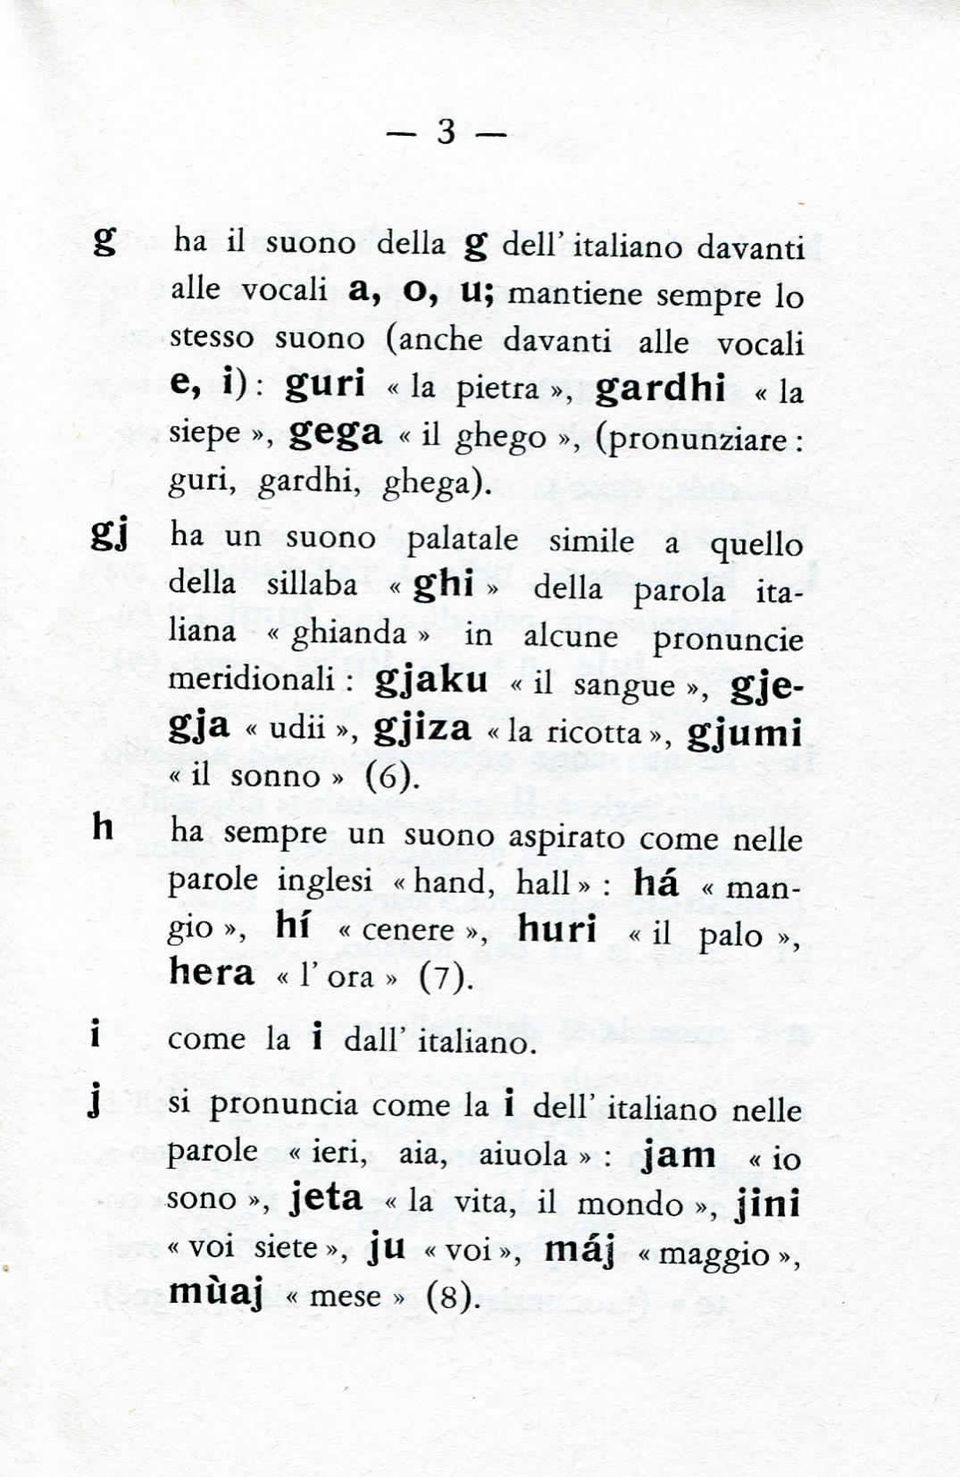 gj ha un suono palatale simile a quello della sillaba «ghì» della parola italiana «ghianda» in alcune pronuncie meridionali : gjaku «il sangue», gjcgja «udii», gjiza «la ricotta», gjumi «il